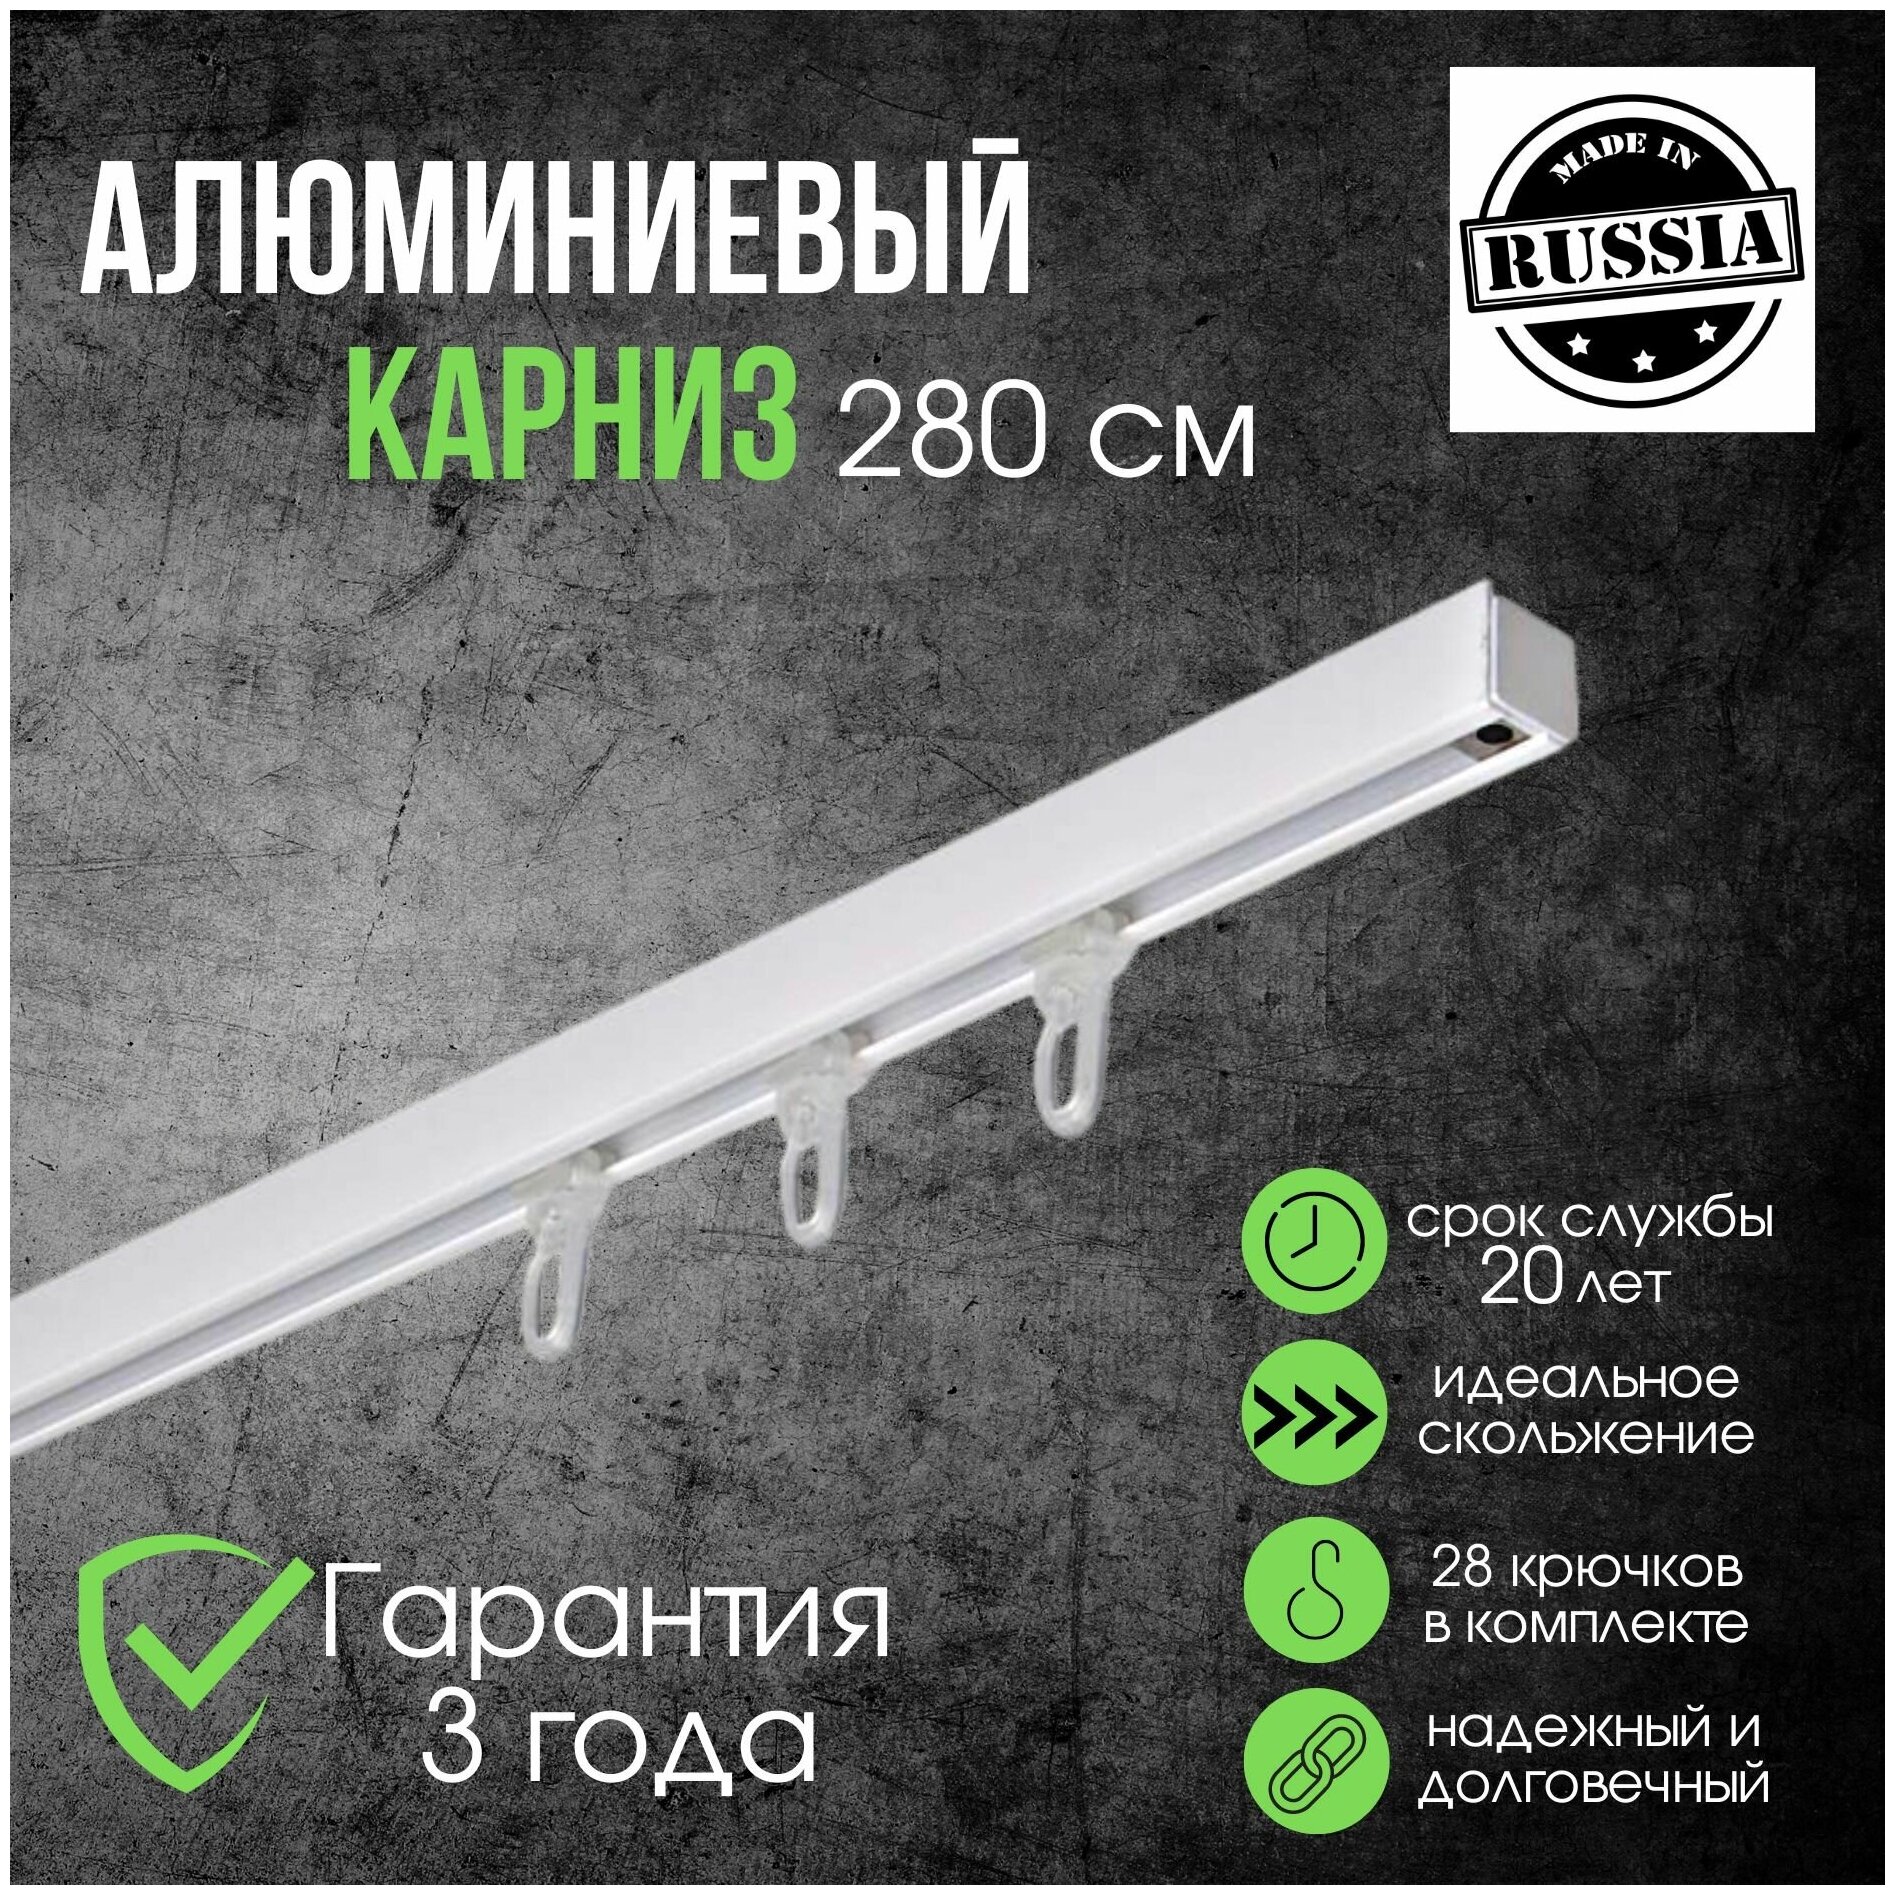 Карниз для штор однорядный потолочный алюминиевый белый 280 см (составной)/ Металлический шинный для натяжных потолков / Гардина для скрытой установки